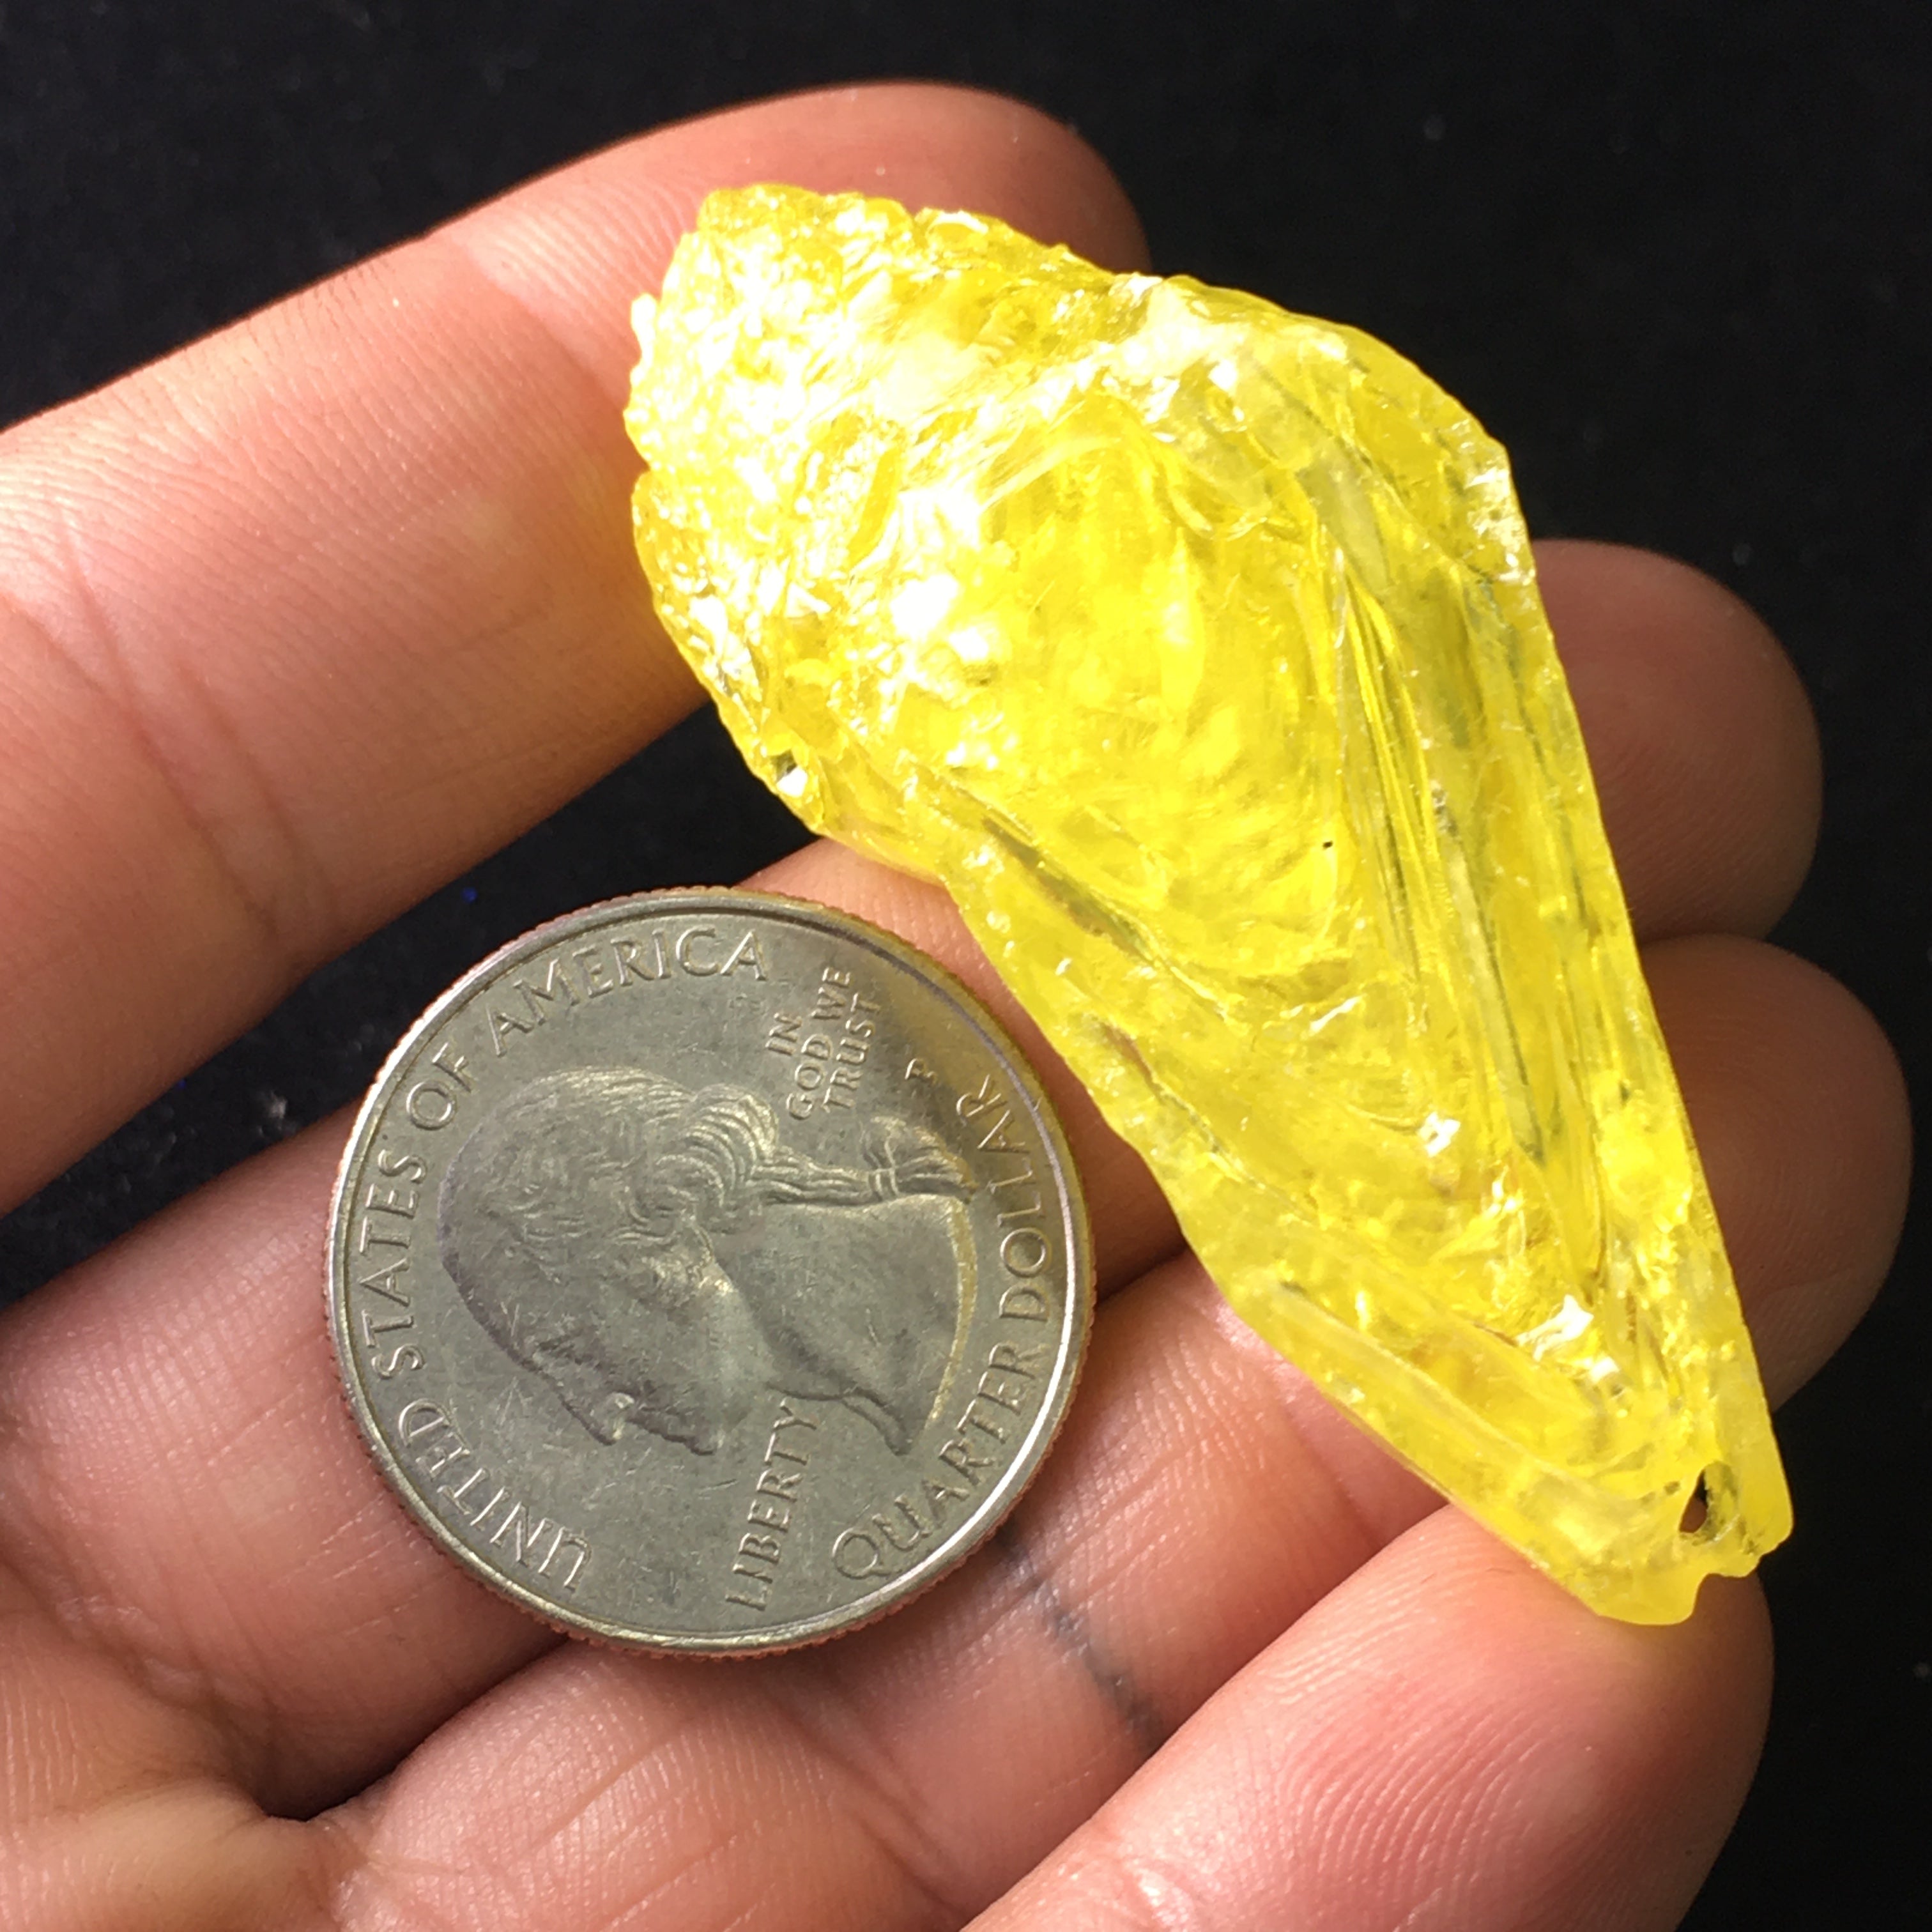 Sulfur Whole Crystal -  013